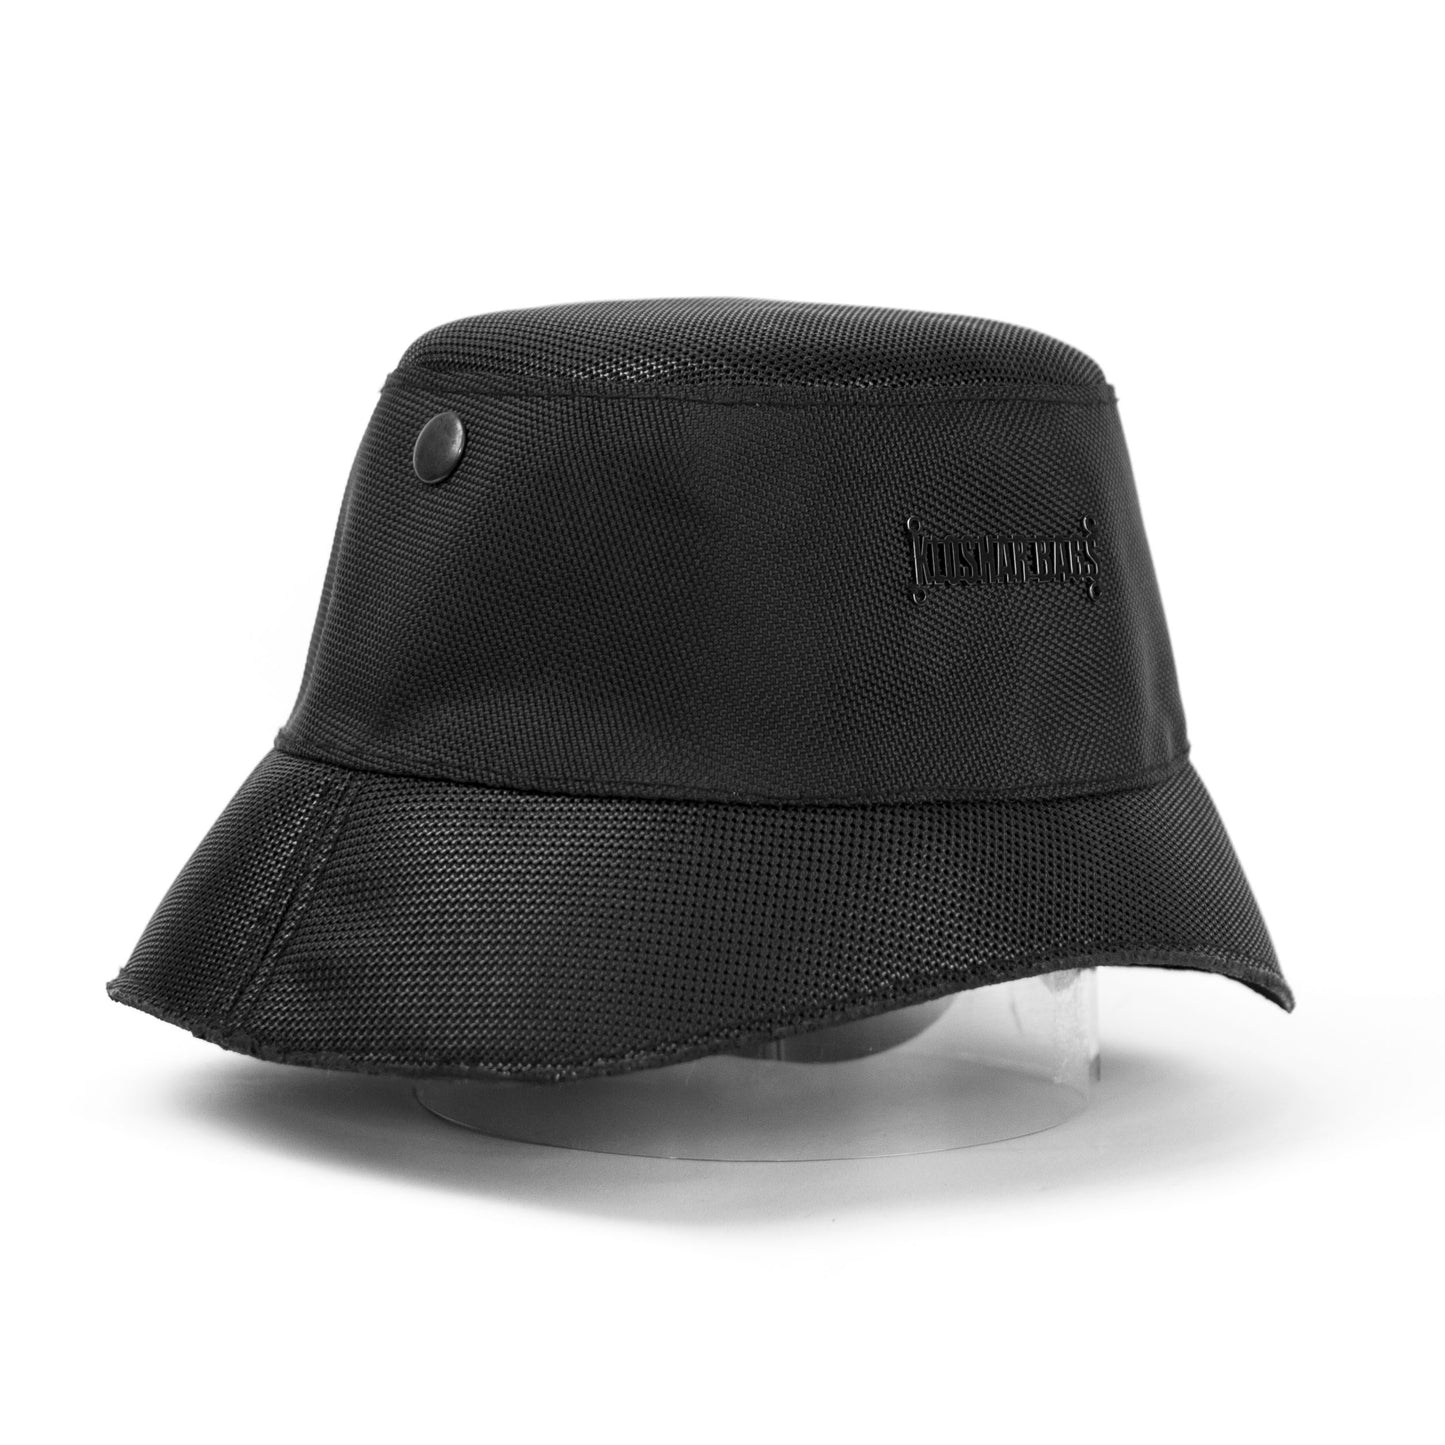 "DARTH VADER" bucket hat